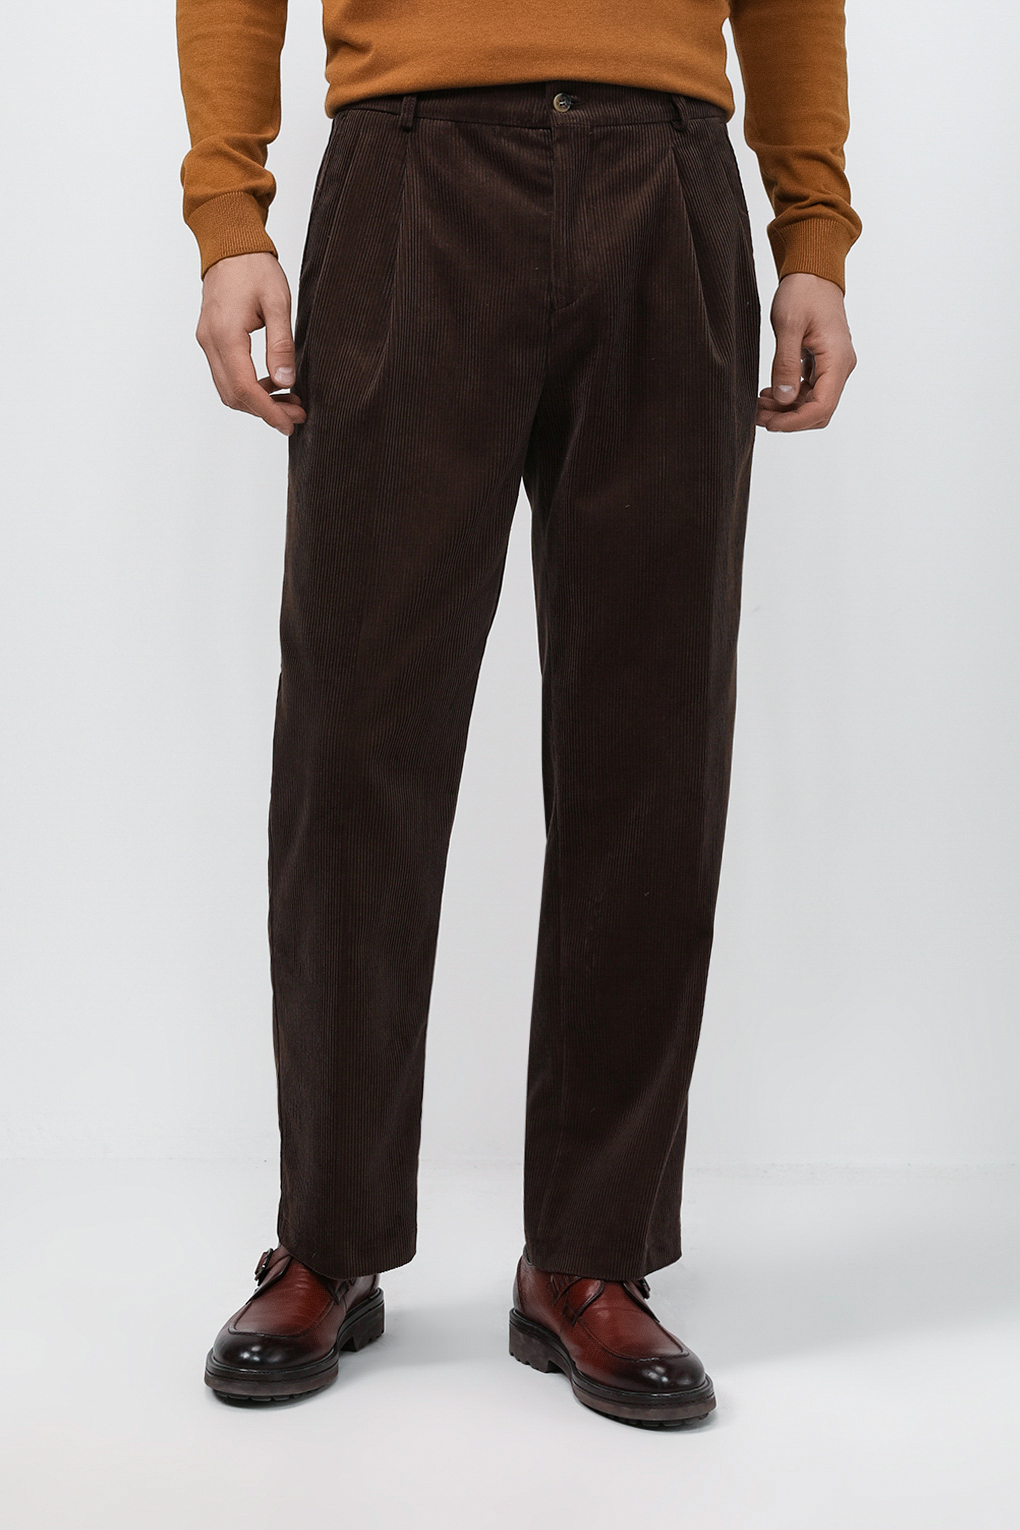 Спортивные брюки мужские MARCO DI RADI MDR23082313-010 коричневые S